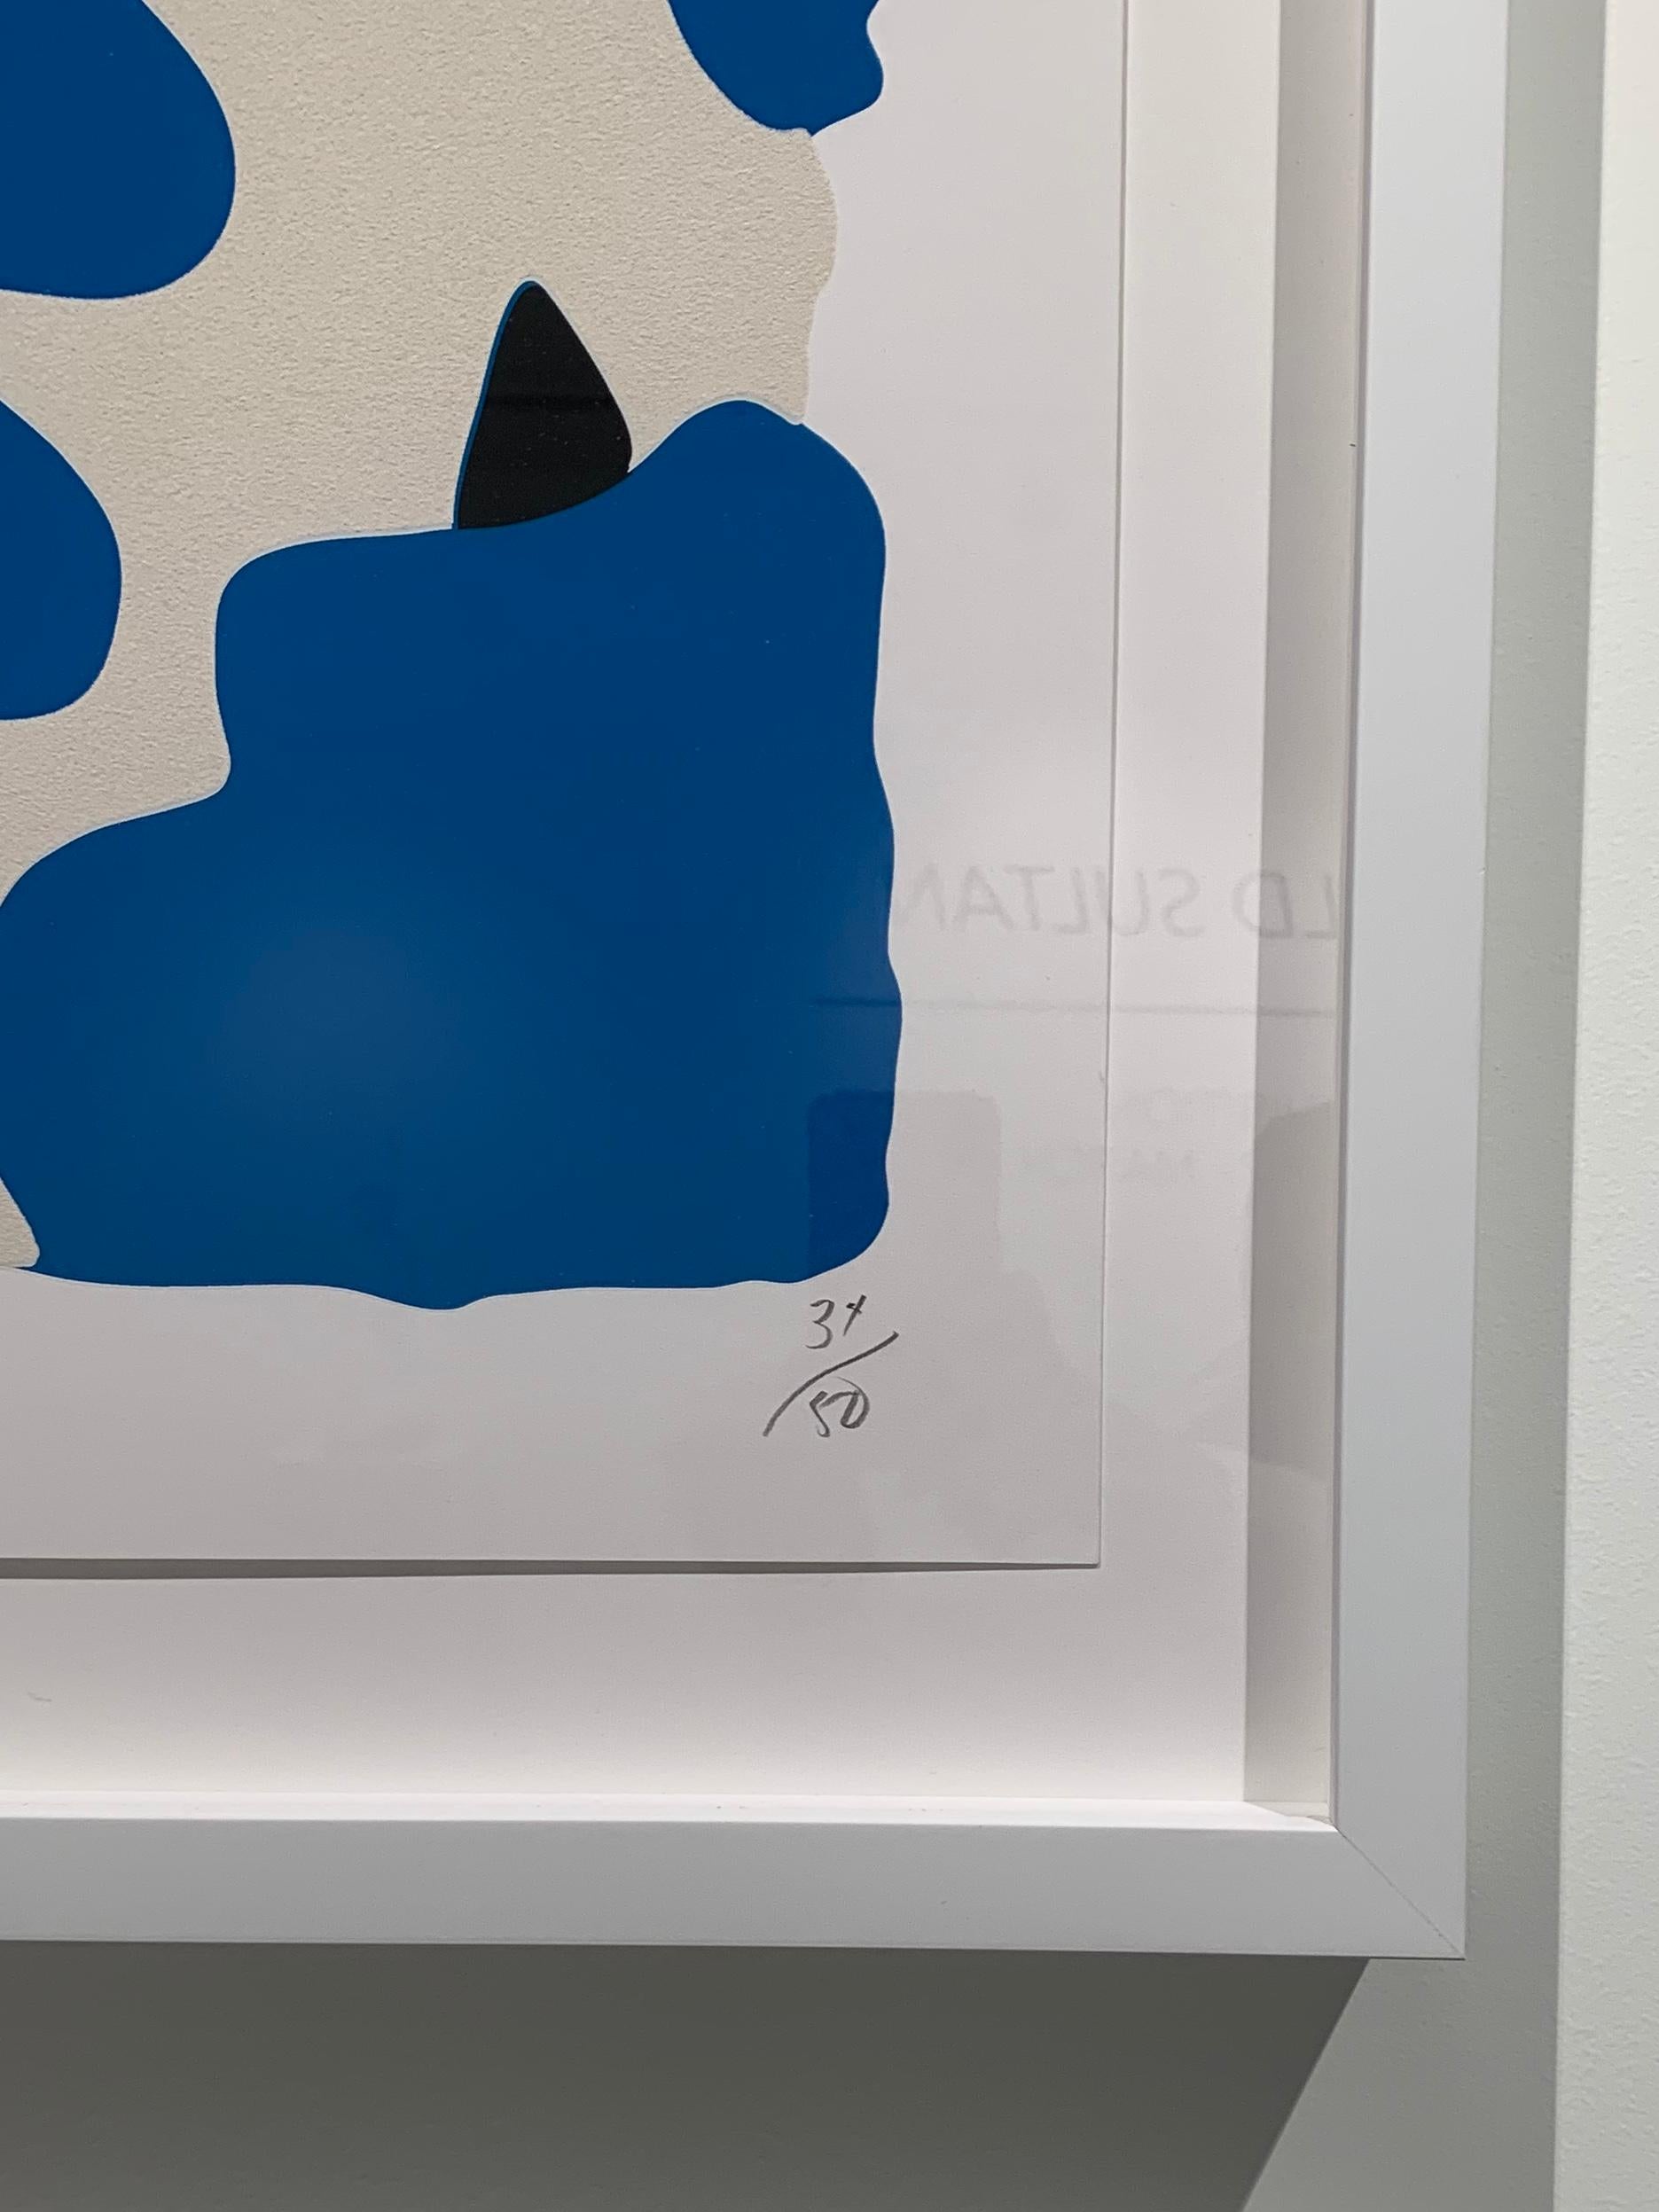 Donald Sultan (geboren 1951)
Laternenblumen (Blau und Weiß), 2017
Farbsiebdruck mit überdruckter Beflockung auf Rising, 2-lagigem Museumskarton
32 x 32 Zoll.
Ausgabe 34 von 50
Signiert vom Künstler
Gerahmt in weißem Galerierahmen und Glas
